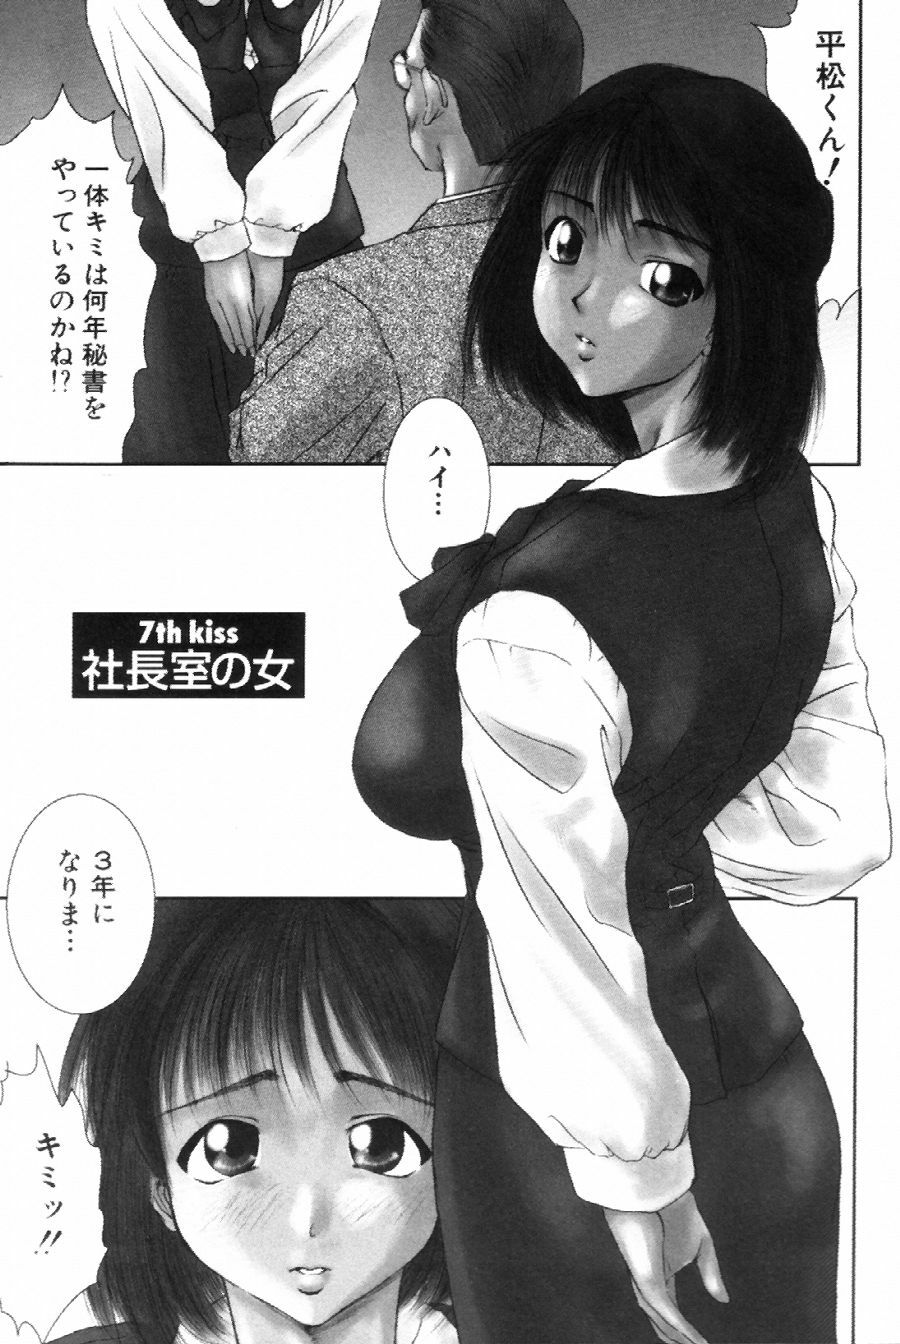 [Ichiro Yumi] i kiss 1 page 41 full